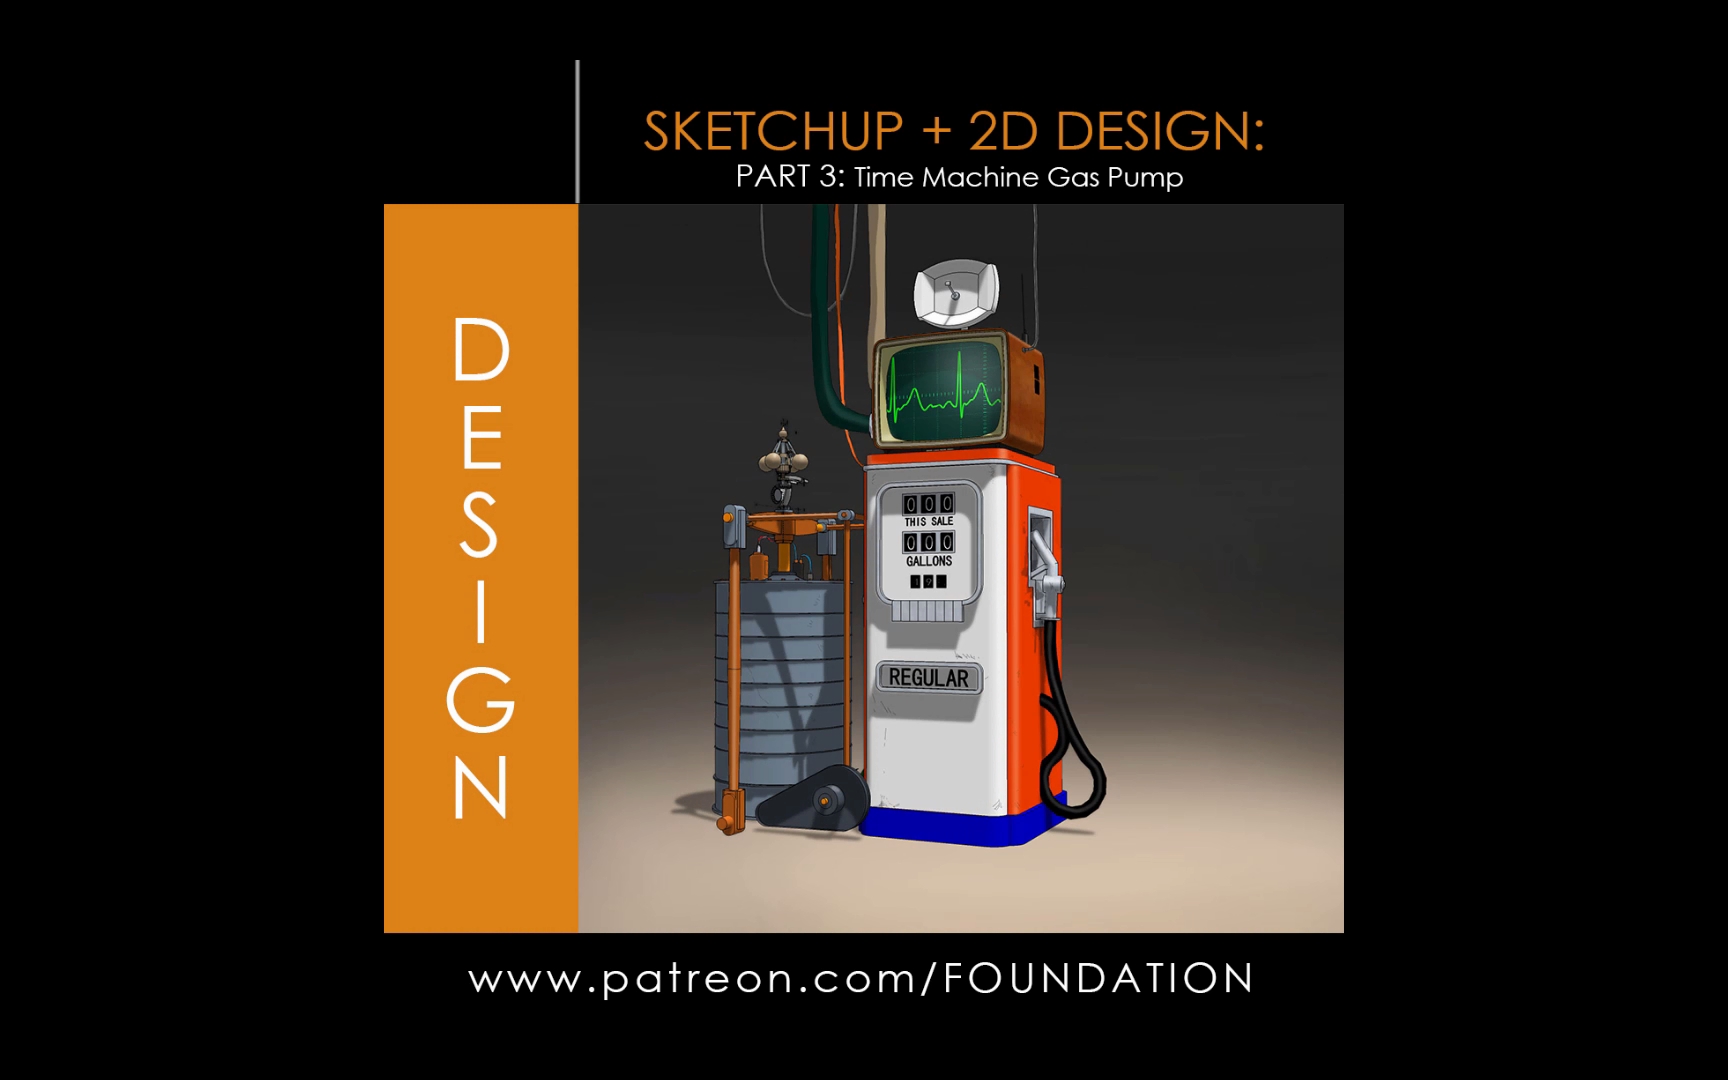 Sketchup + 2D Design